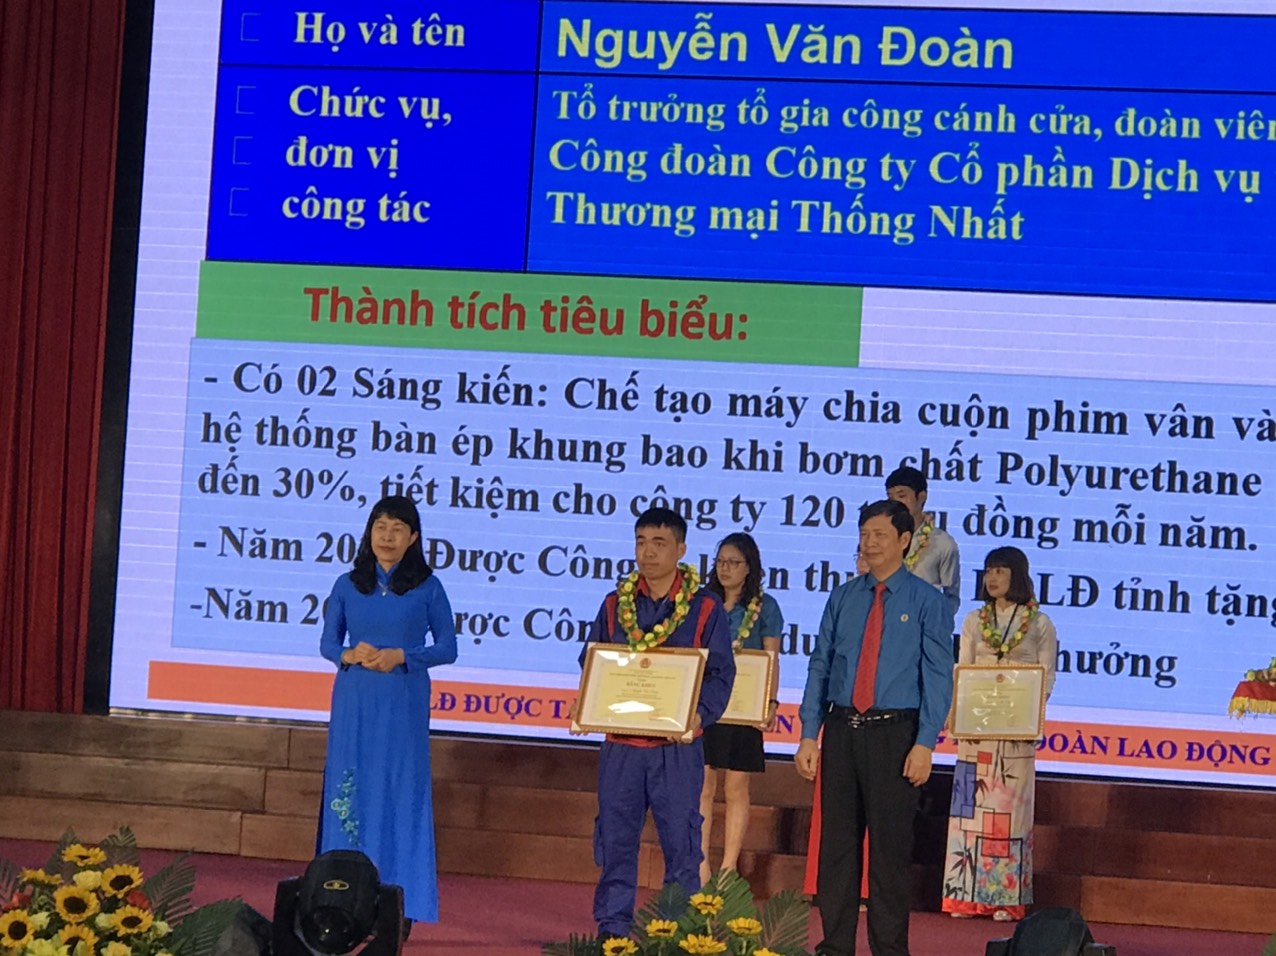 Đồng chí Nguyễn Văn Đoàn nhận bằng khen